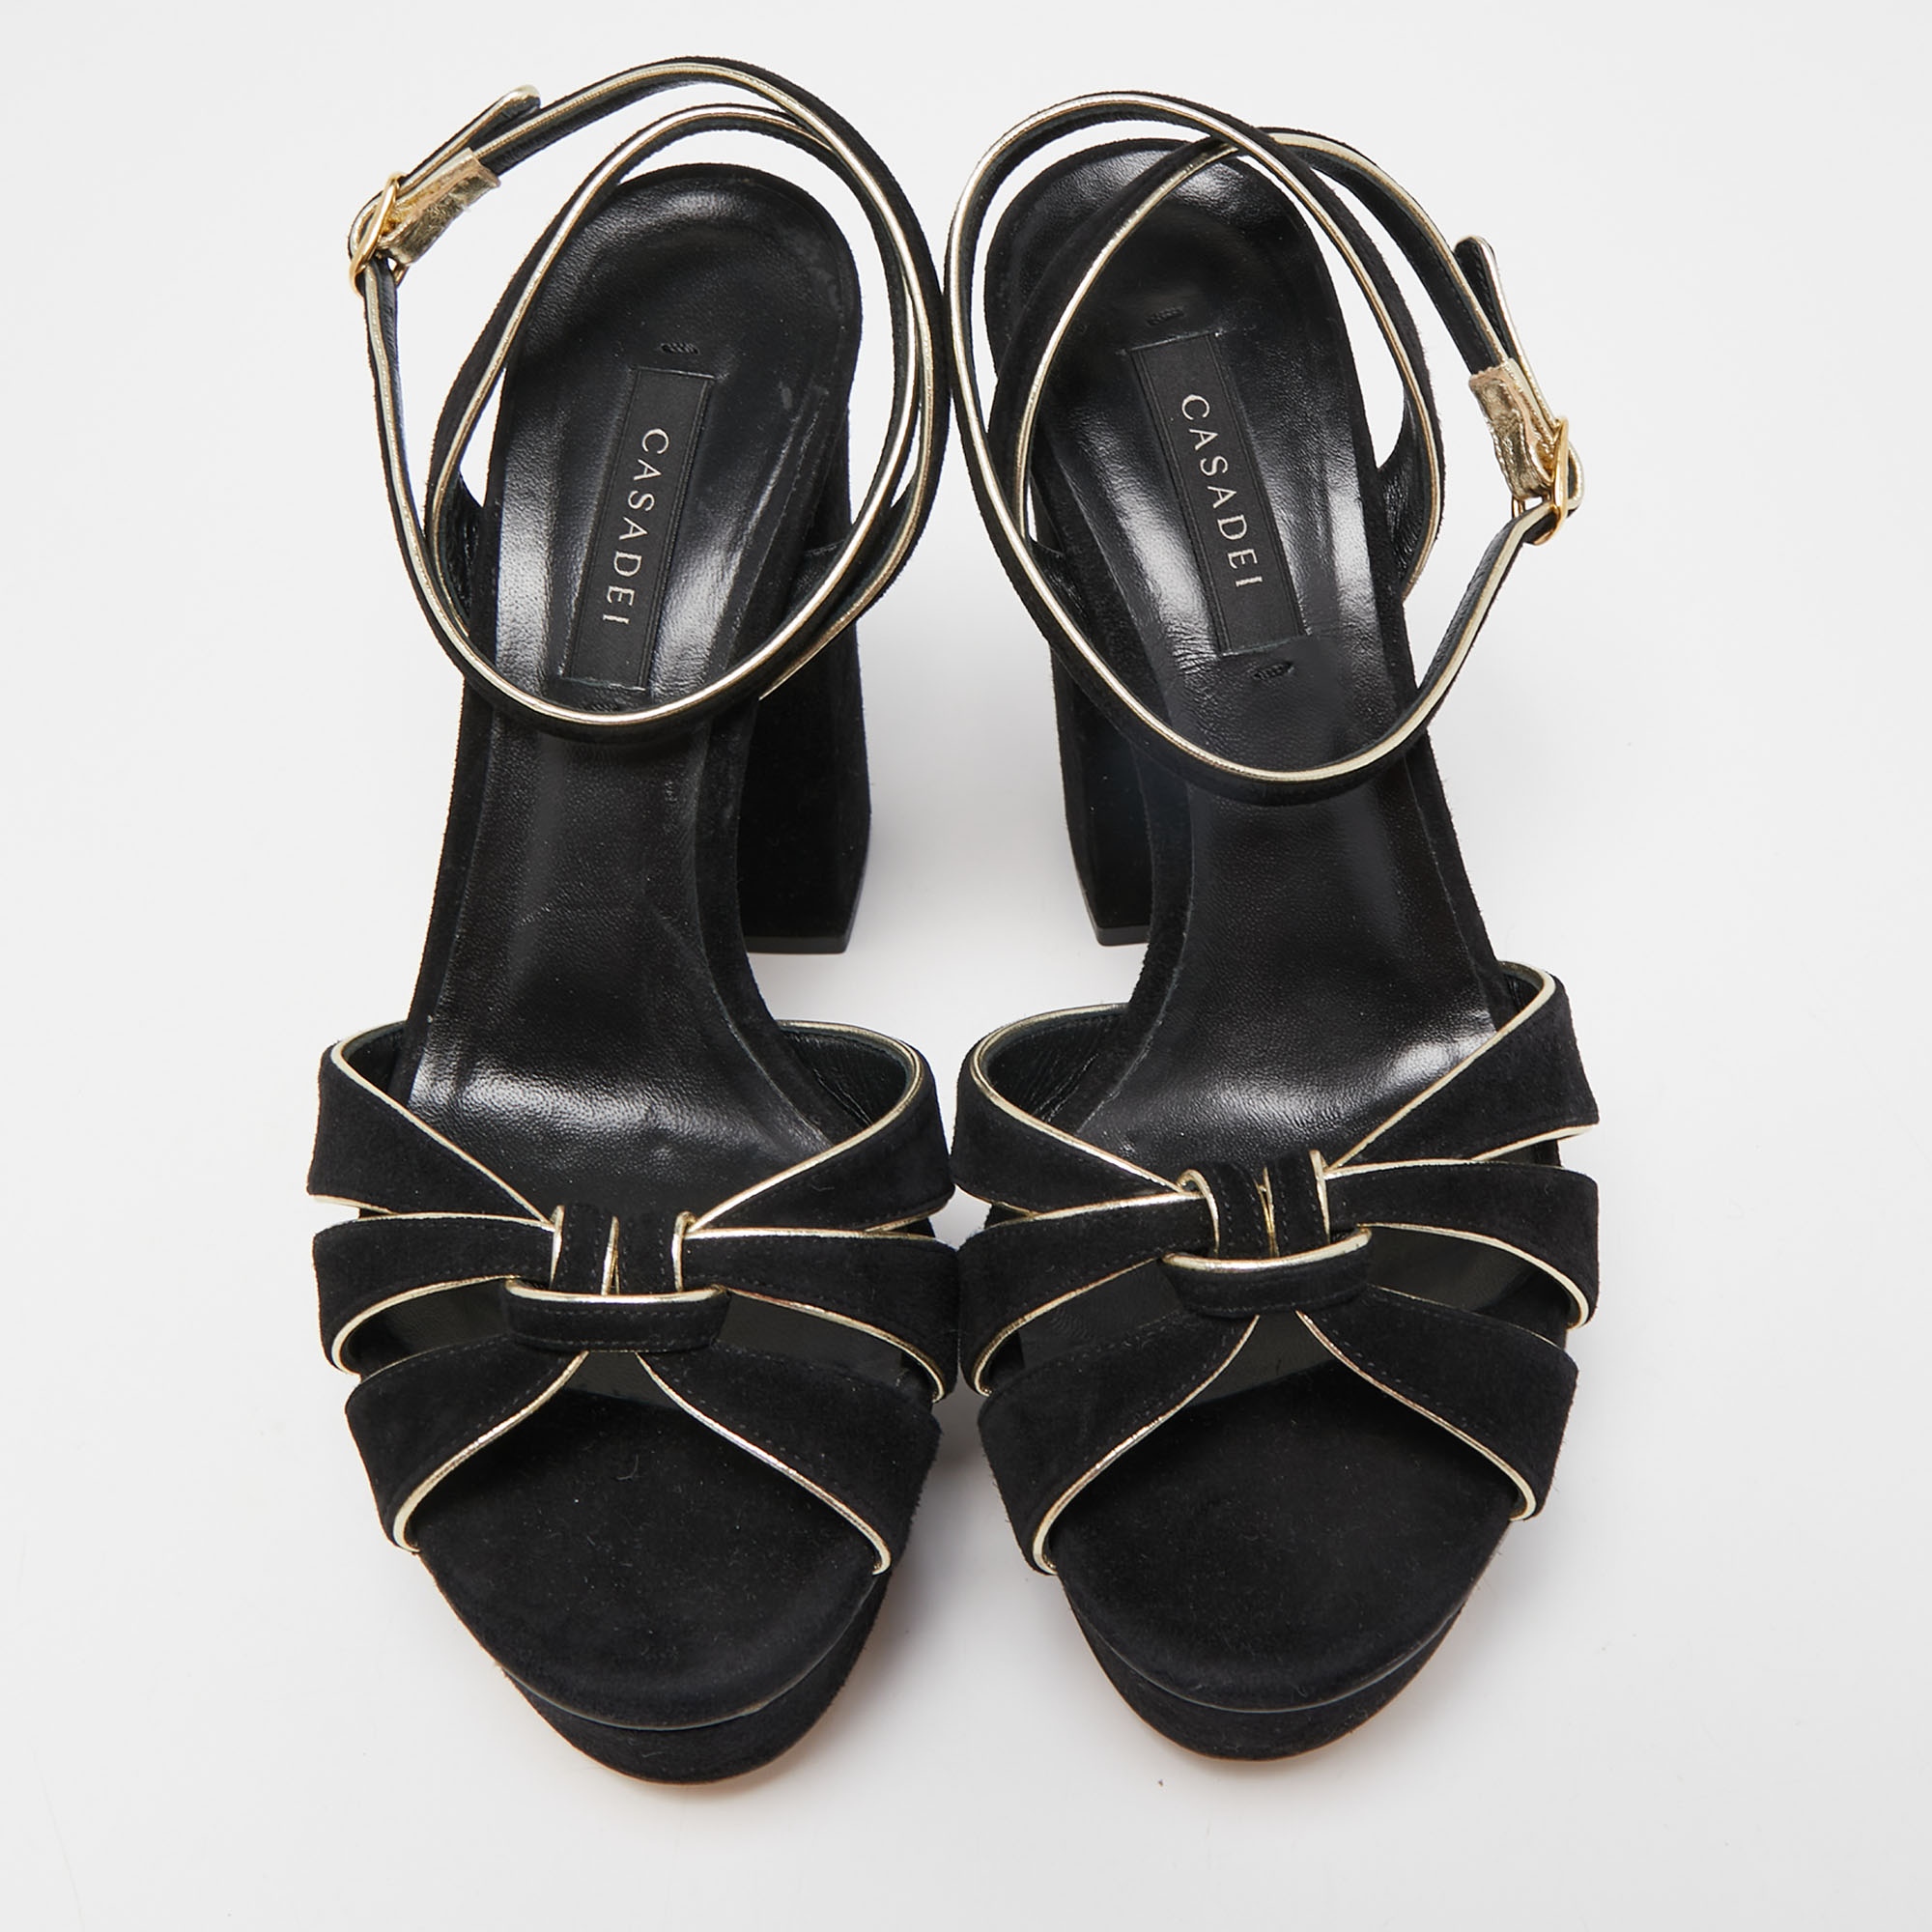 Casadei Black/Gold Suede Platform Ankle Strap Sandals Size 36